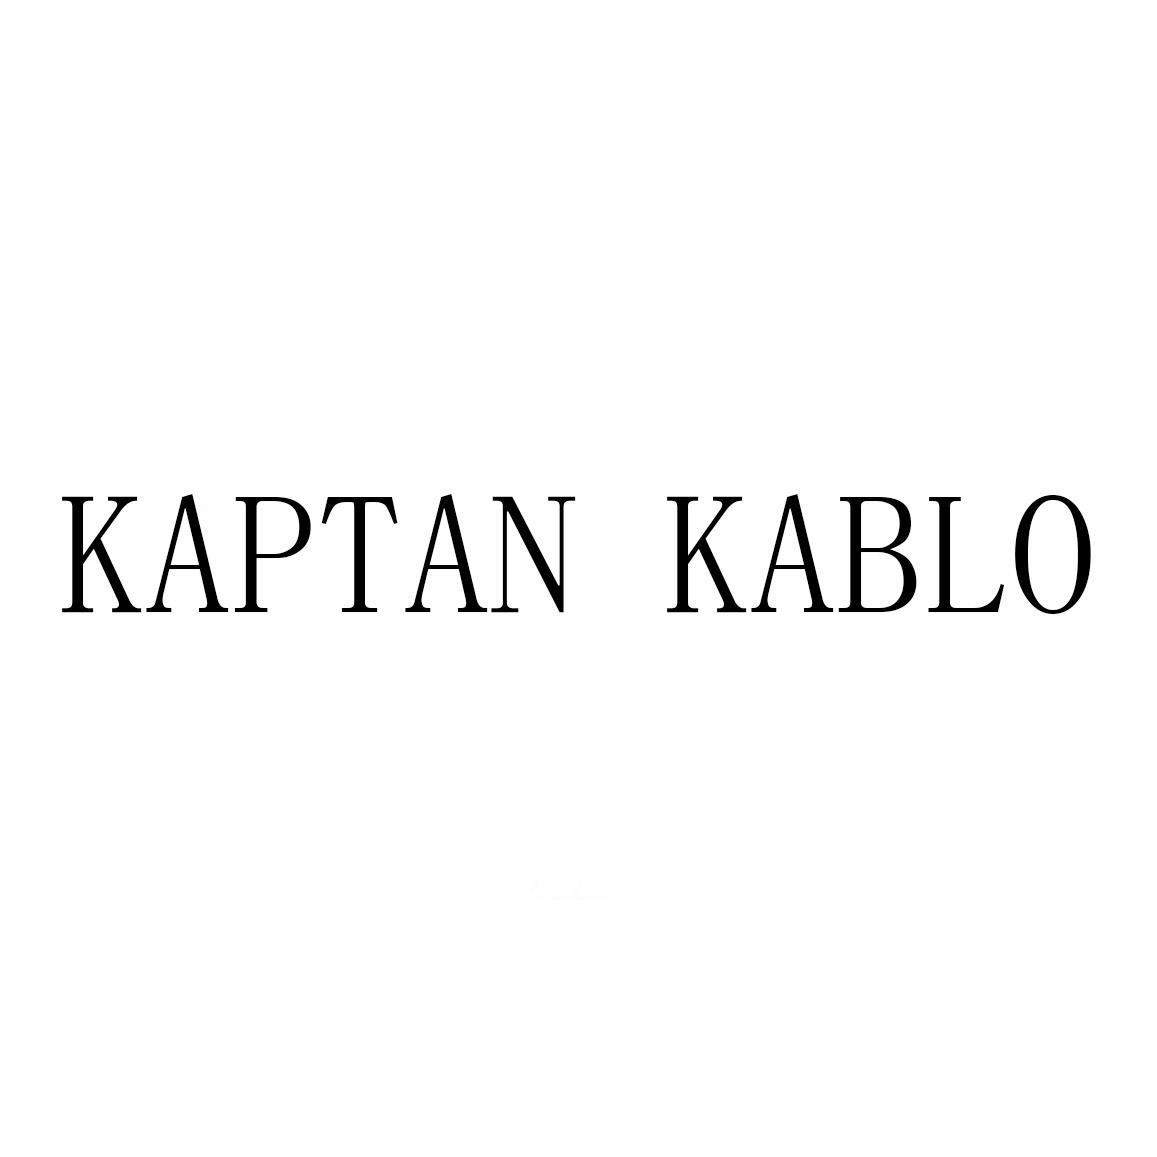 KAPTAN KABLO 商标公告